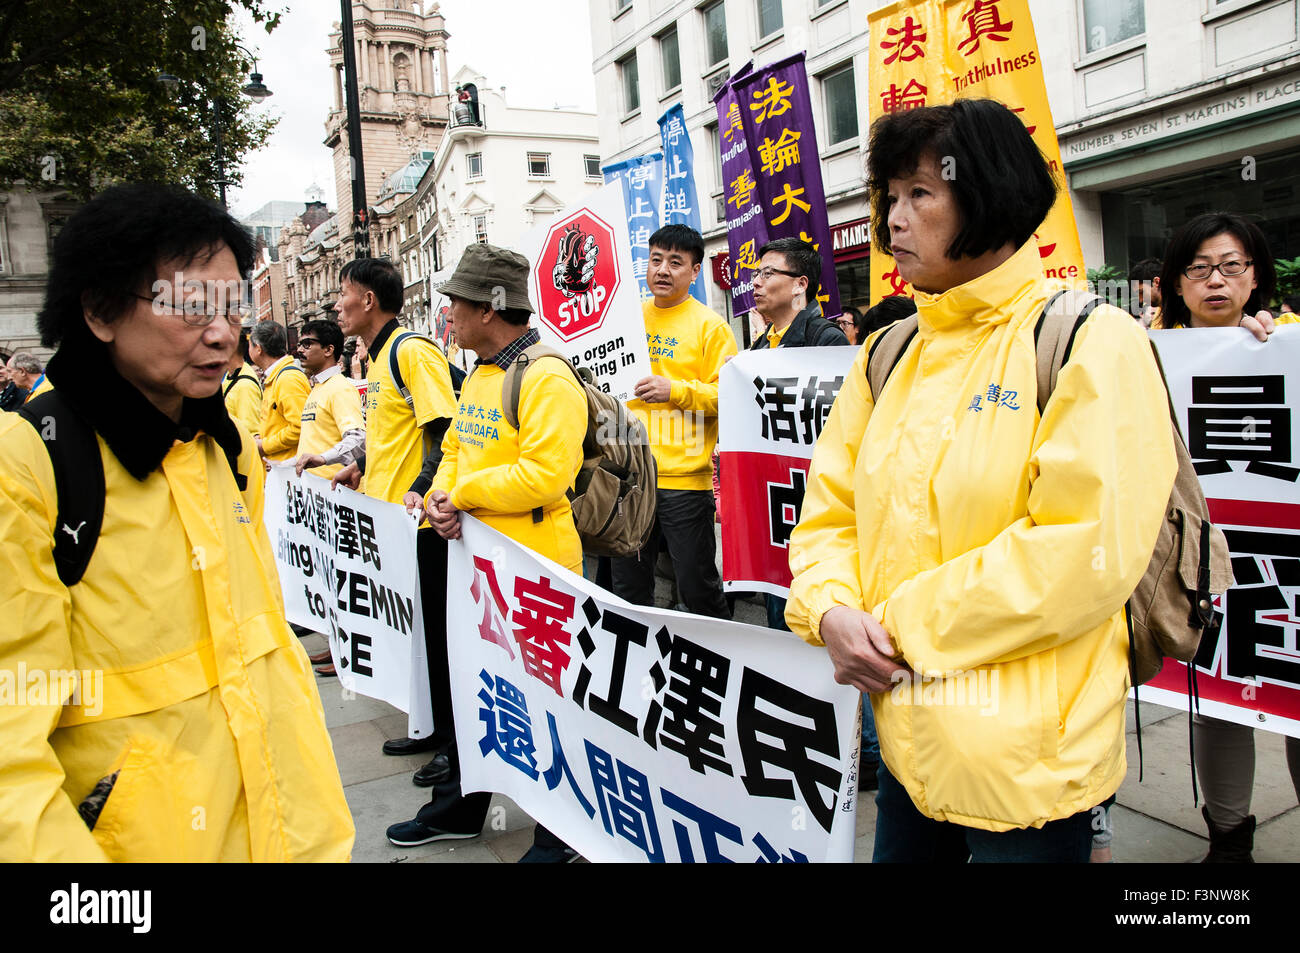 Londra, Regno Unito. 10 ottobre, 2015. Falun Dafa professionisti azienda banner chiedendo giustizia per il Presidente Jiang Zemin a una protesta nel centro di Londra (UK), 10 ottobre 2015. Credito: Noemi Gago/Alamy Live News Foto Stock